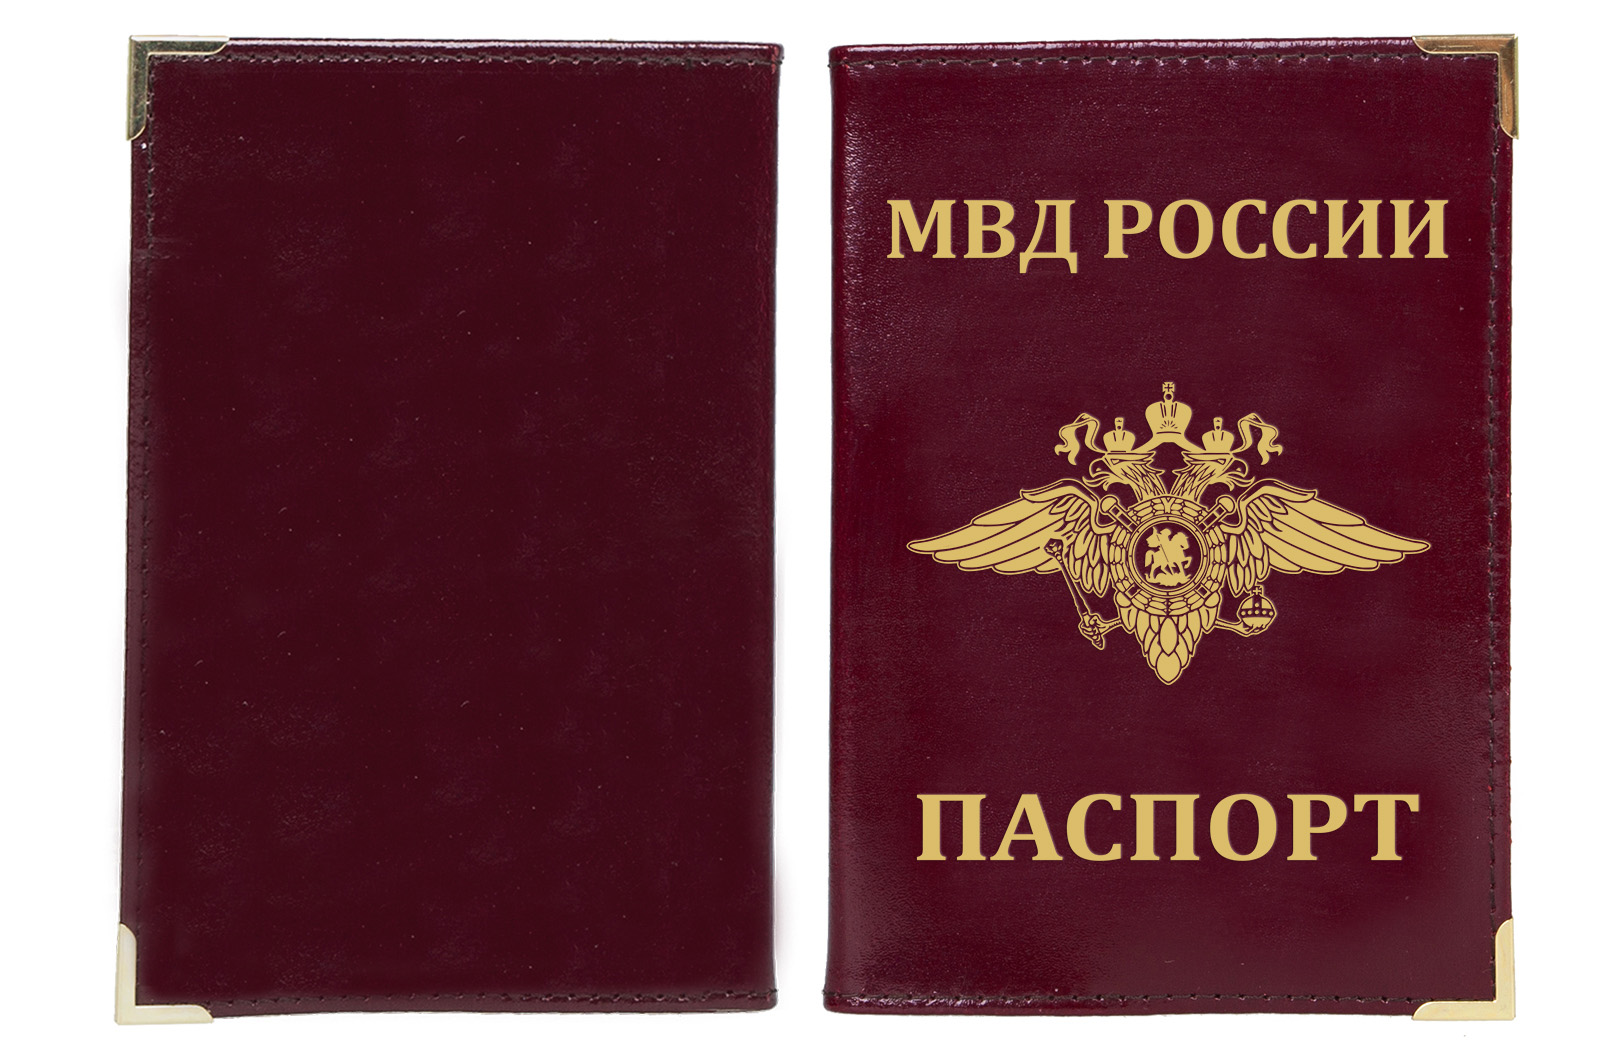 Обложка на паспорт с гербом МВД России 